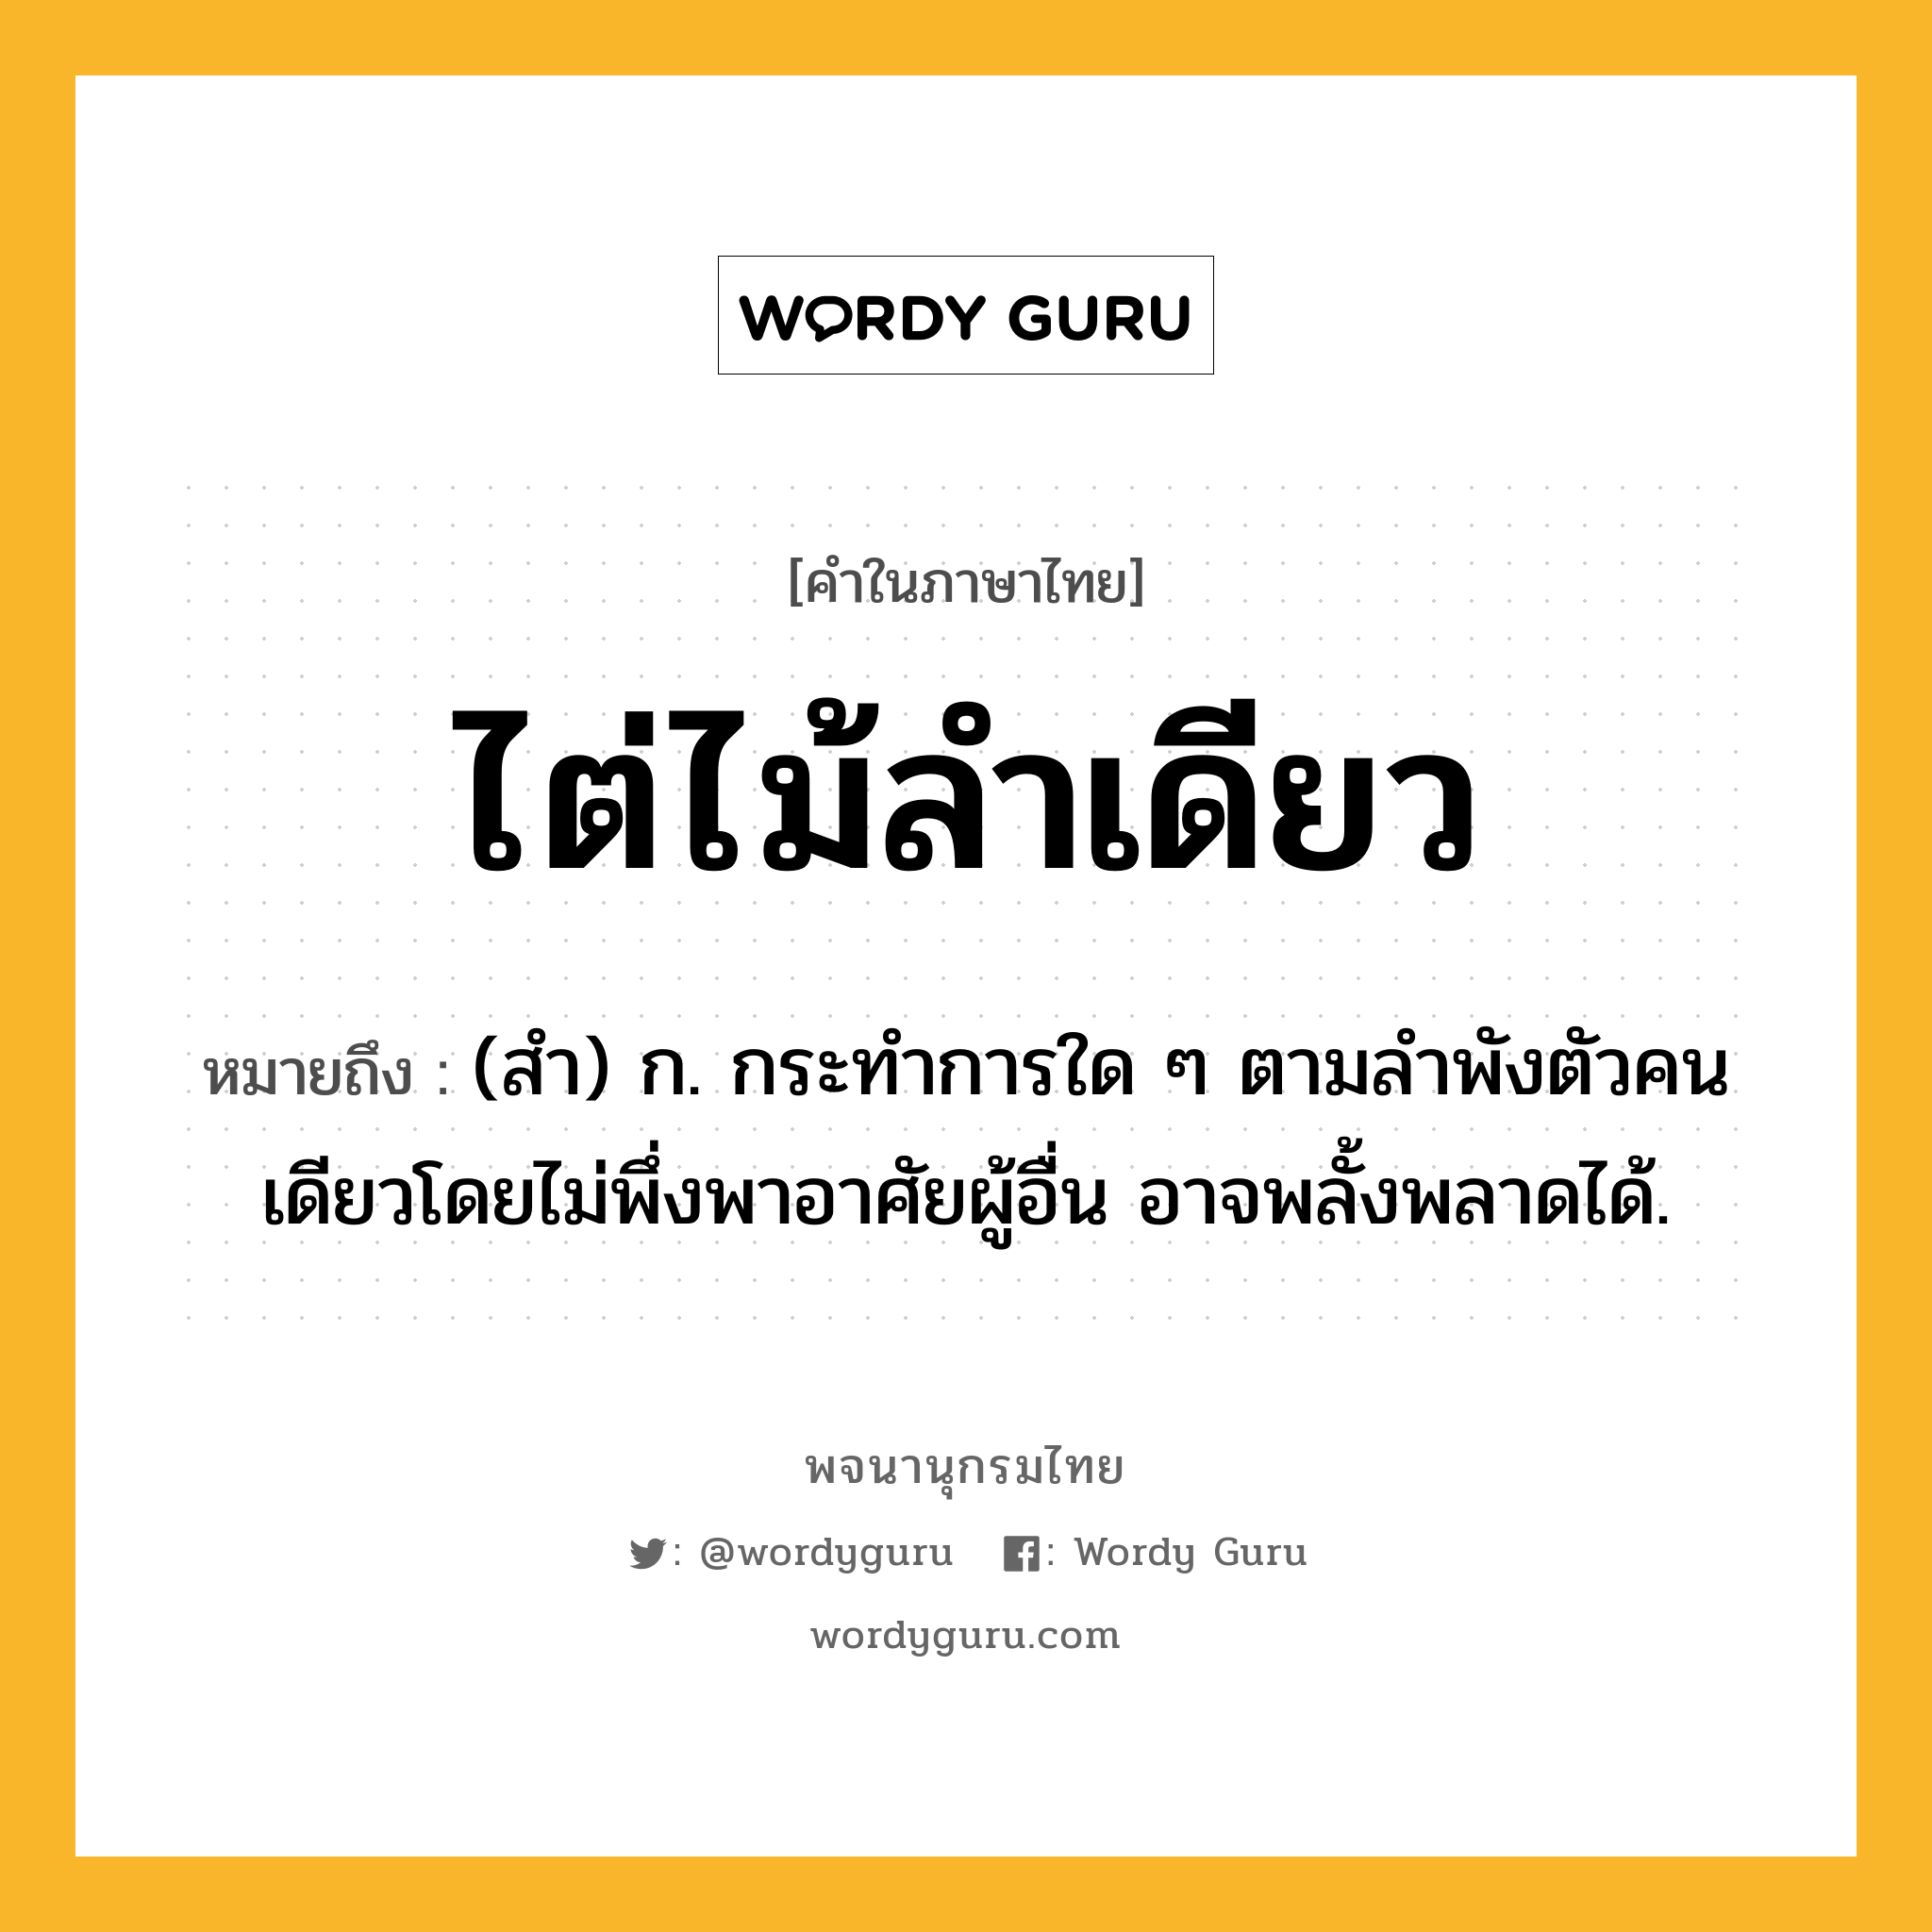 ไต่ไม้ลำเดียว หมายถึงอะไร?, คำในภาษาไทย ไต่ไม้ลำเดียว หมายถึง (สํา) ก. กระทําการใด ๆ ตามลําพังตัวคนเดียวโดยไม่พึ่งพาอาศัยผู้อื่น อาจพลั้งพลาดได้.